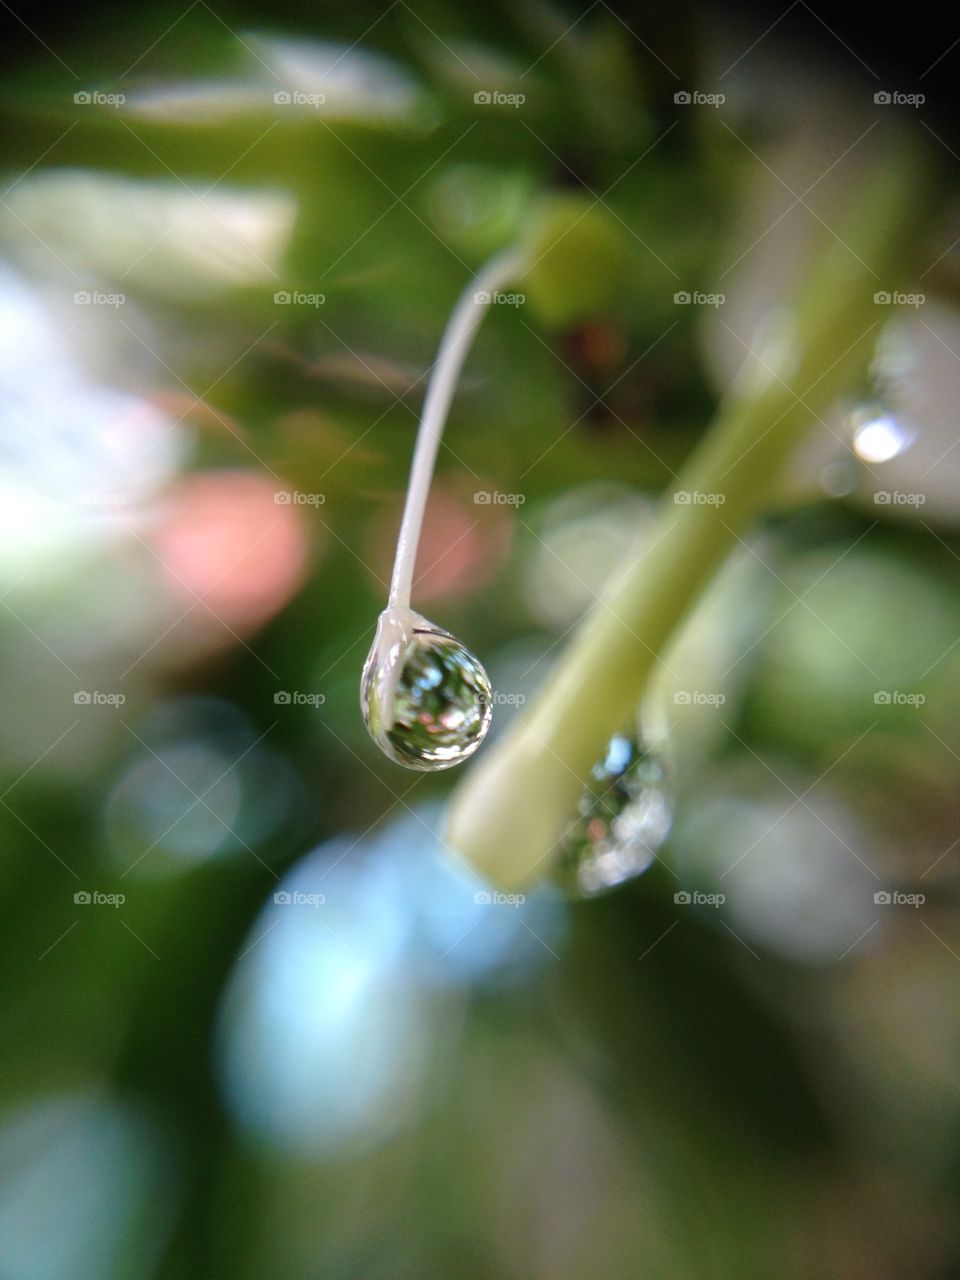 Close-up of a rain drop